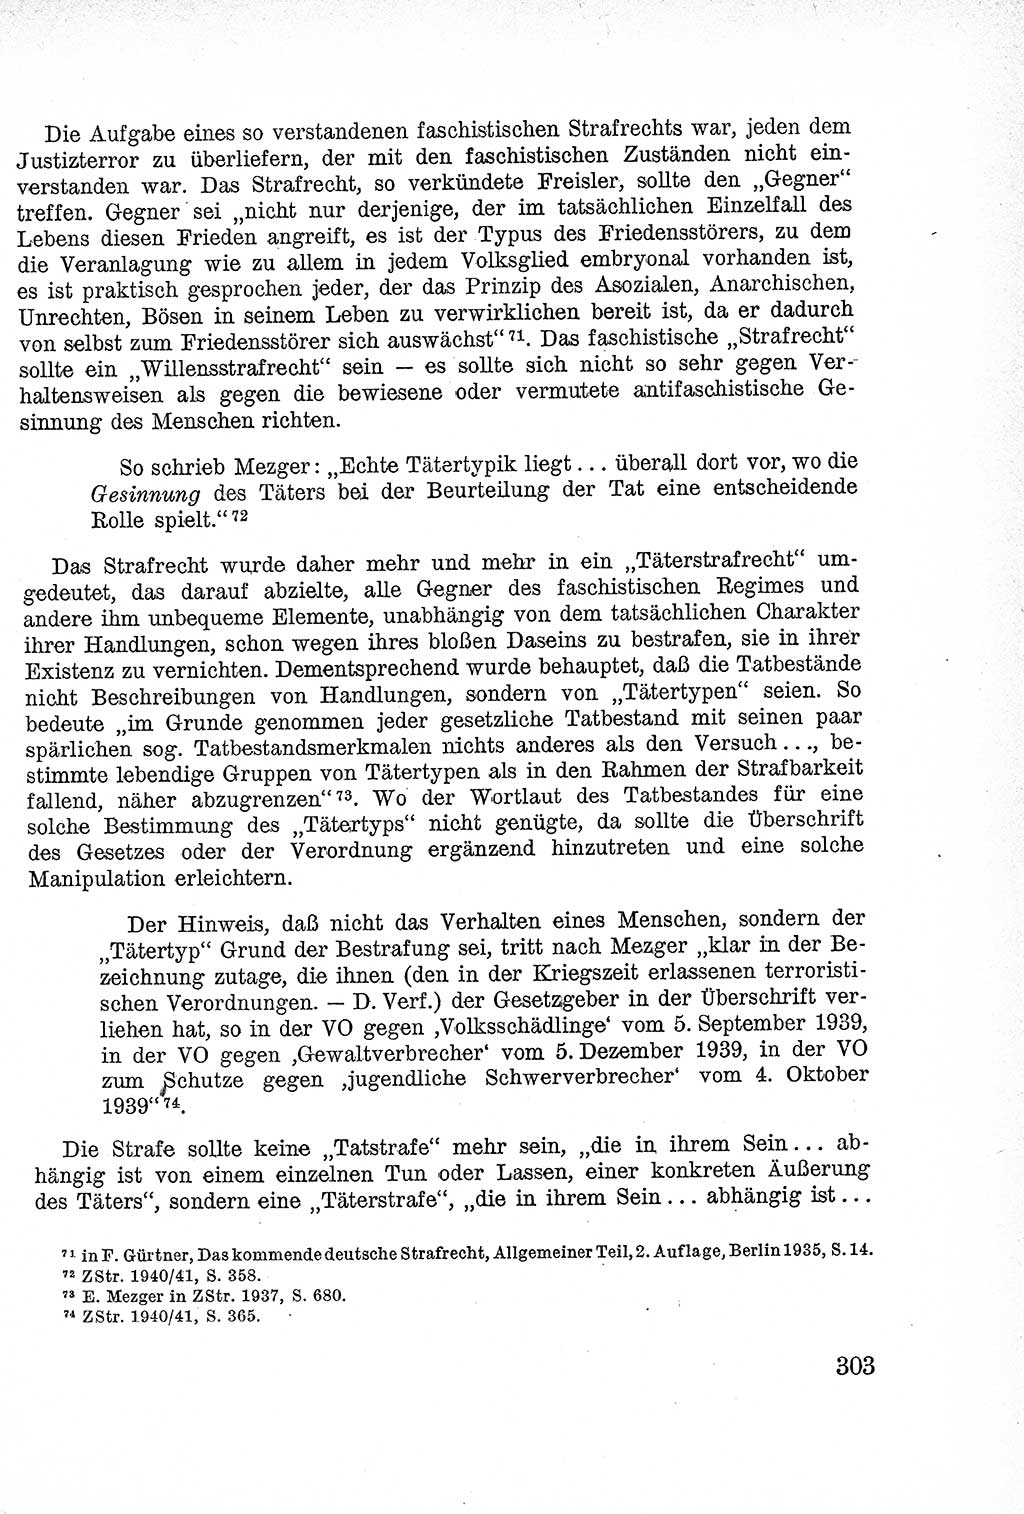 Lehrbuch des Strafrechts der Deutschen Demokratischen Republik (DDR), Allgemeiner Teil 1957, Seite 303 (Lb. Strafr. DDR AT 1957, S. 303)